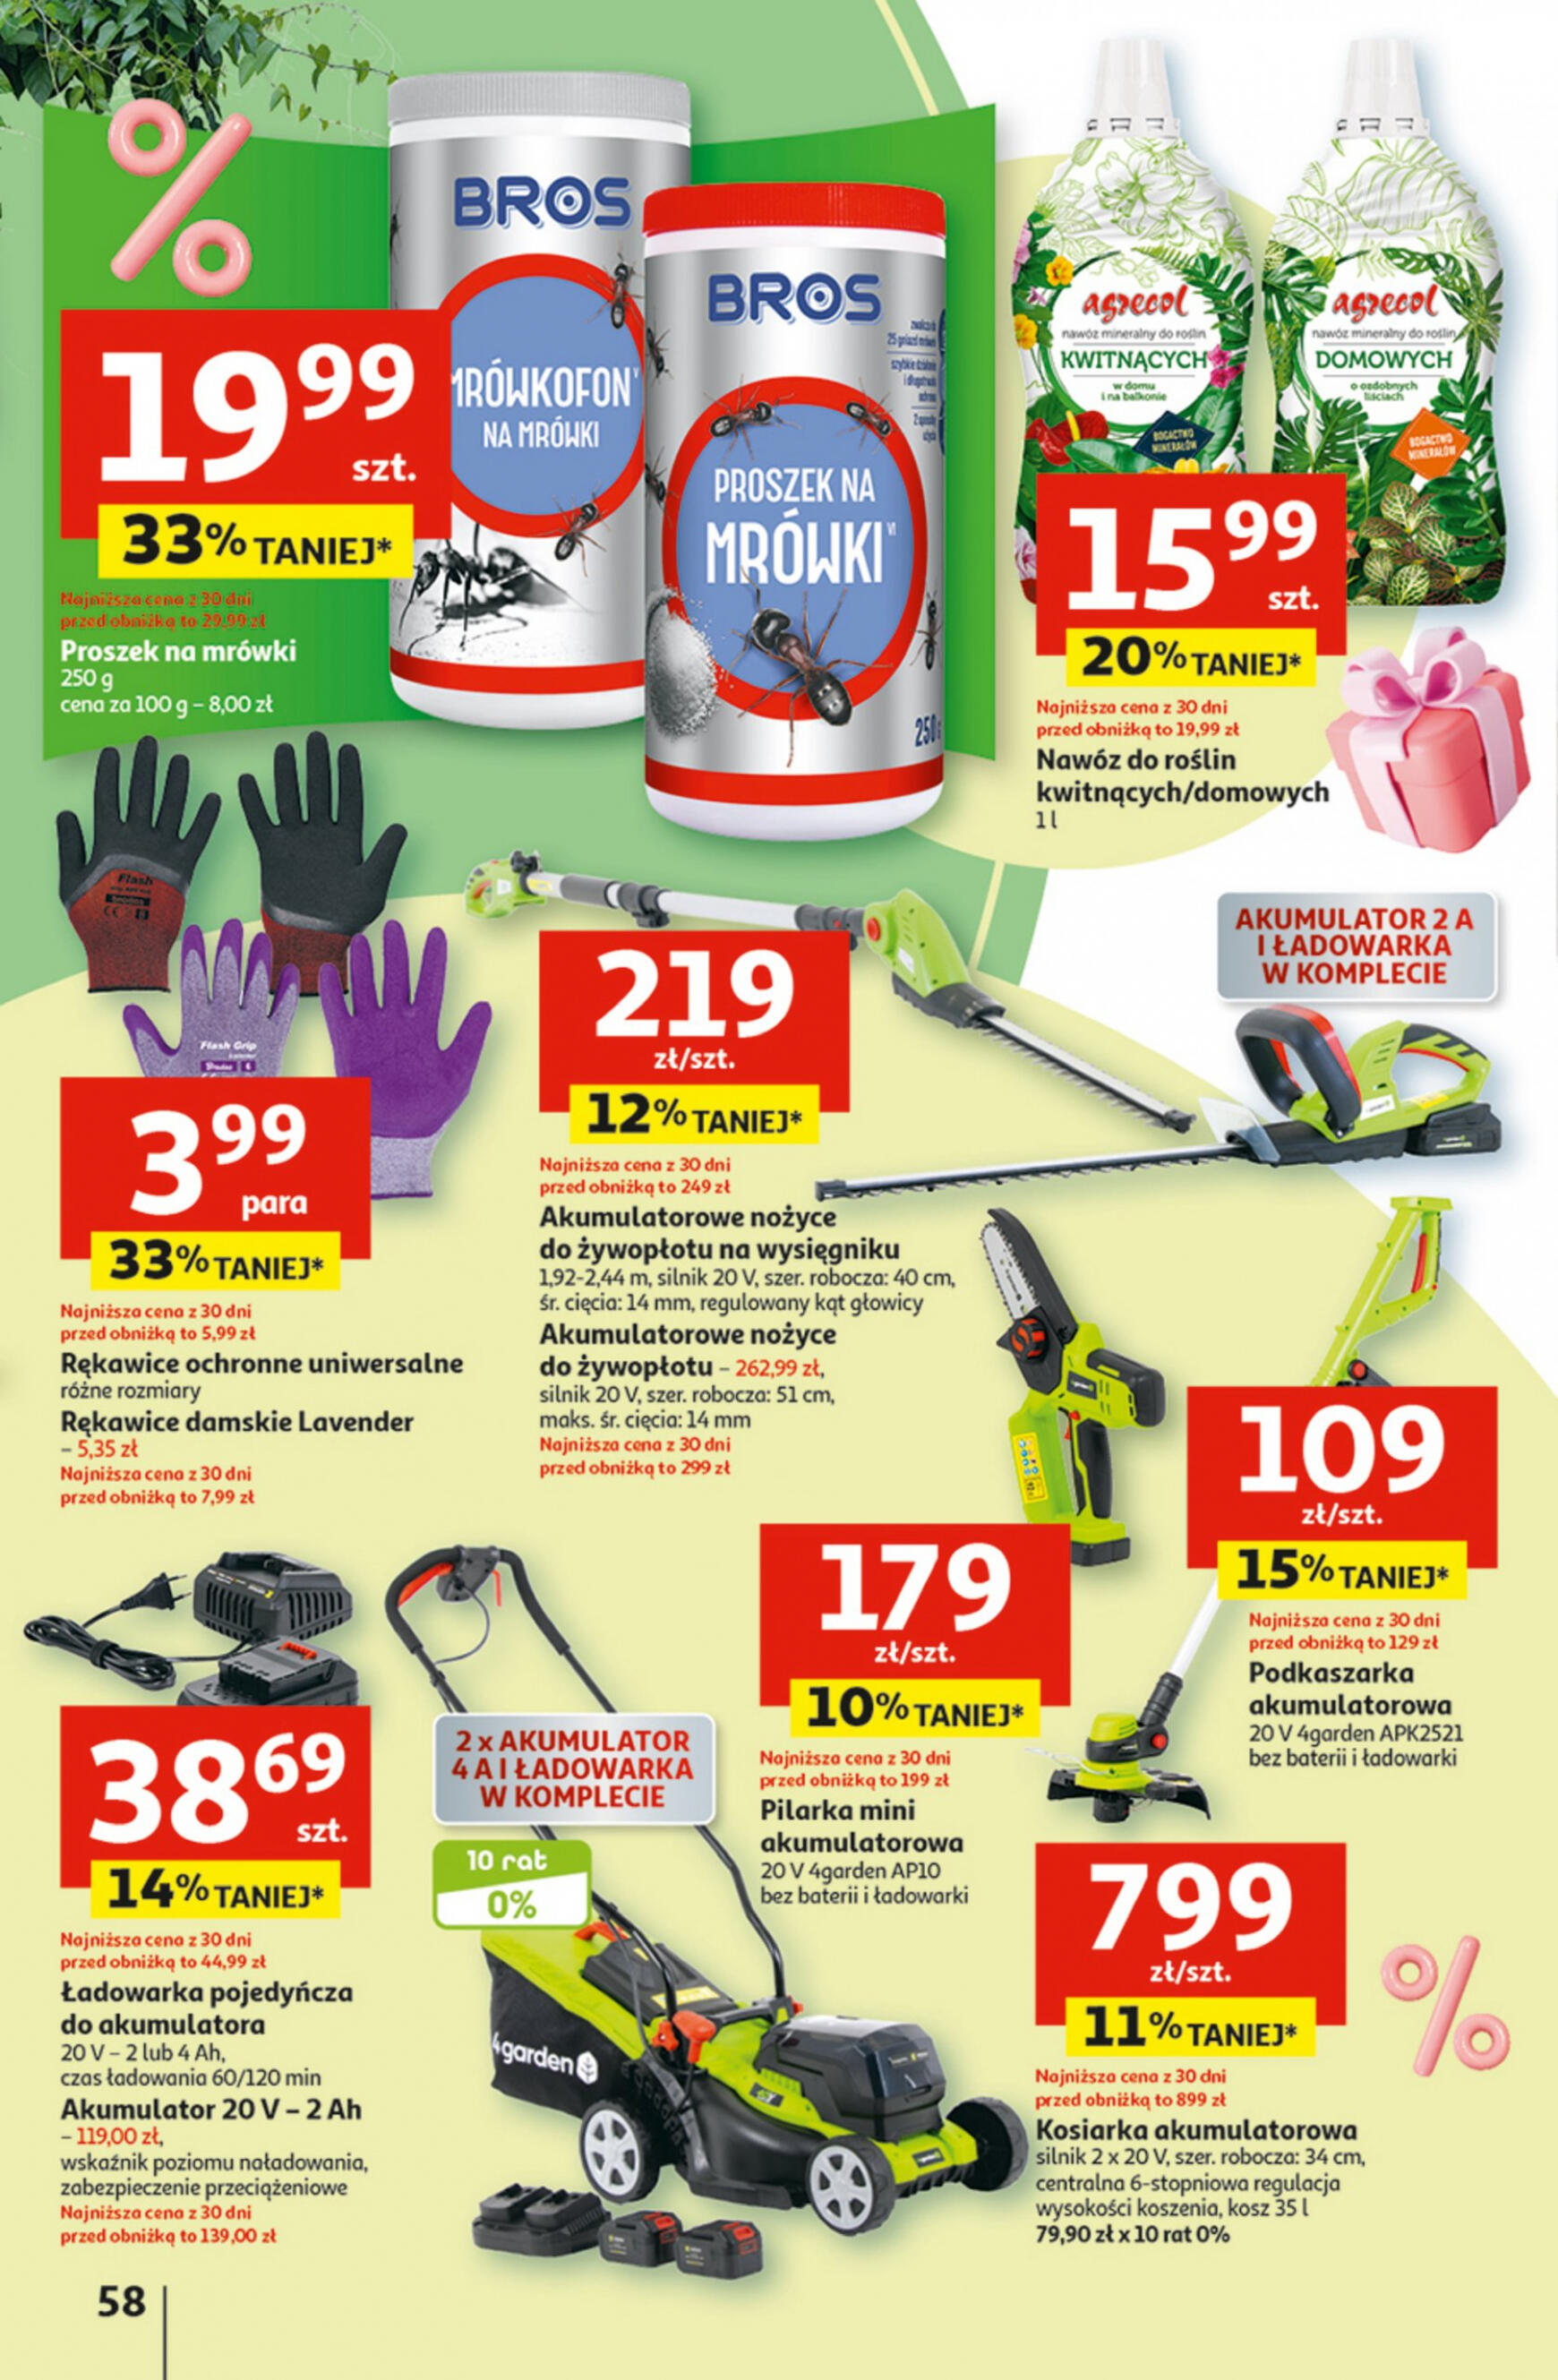 auchan - Hipermarket Auchan - Gazetka Jeszcze taniej na urodziny gazetka aktualna ważna od 02.05. - 08.05. - page: 58